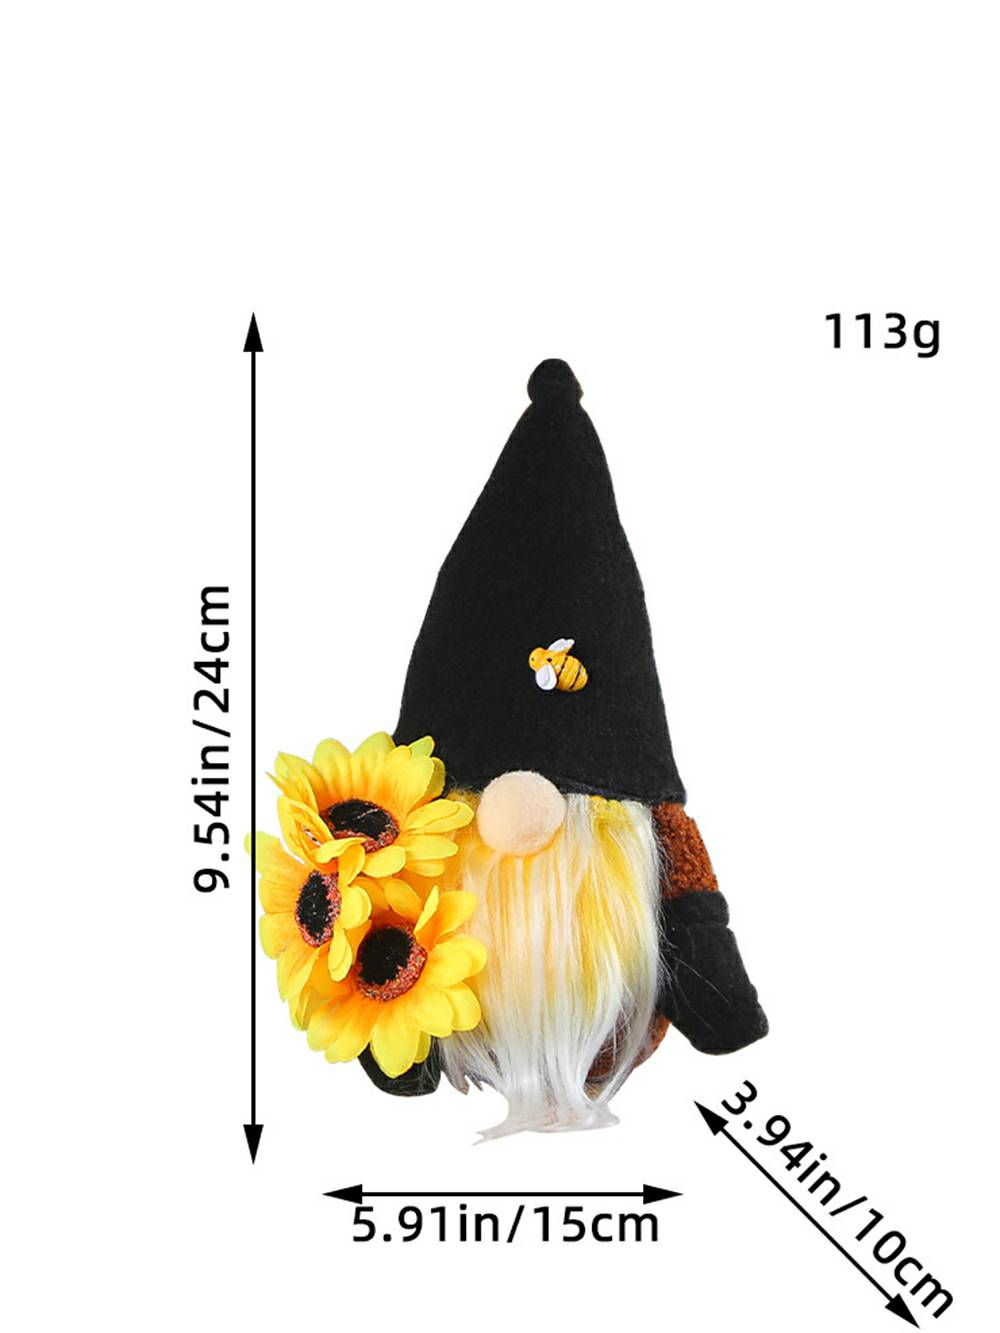 Hierscht Sonneblummen an Honeybee Nordic Elf Chrëschtdag Dekoratioun